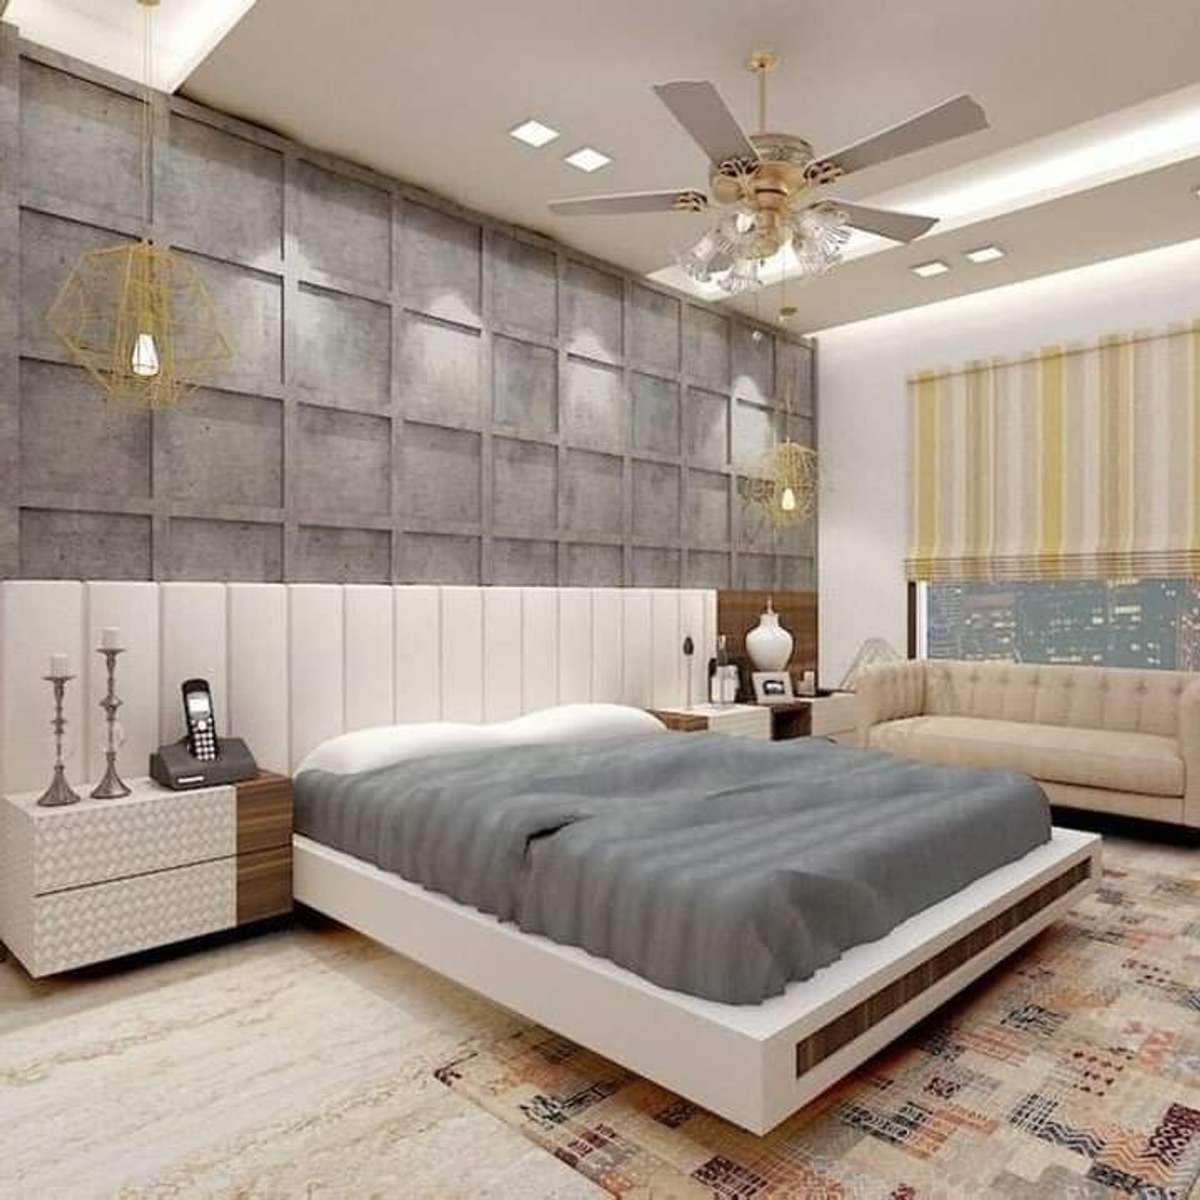 Furniture, Lighting, Storage, Bedroom Designs by Interior Designer Housie Interior, Jaipur | Kolo